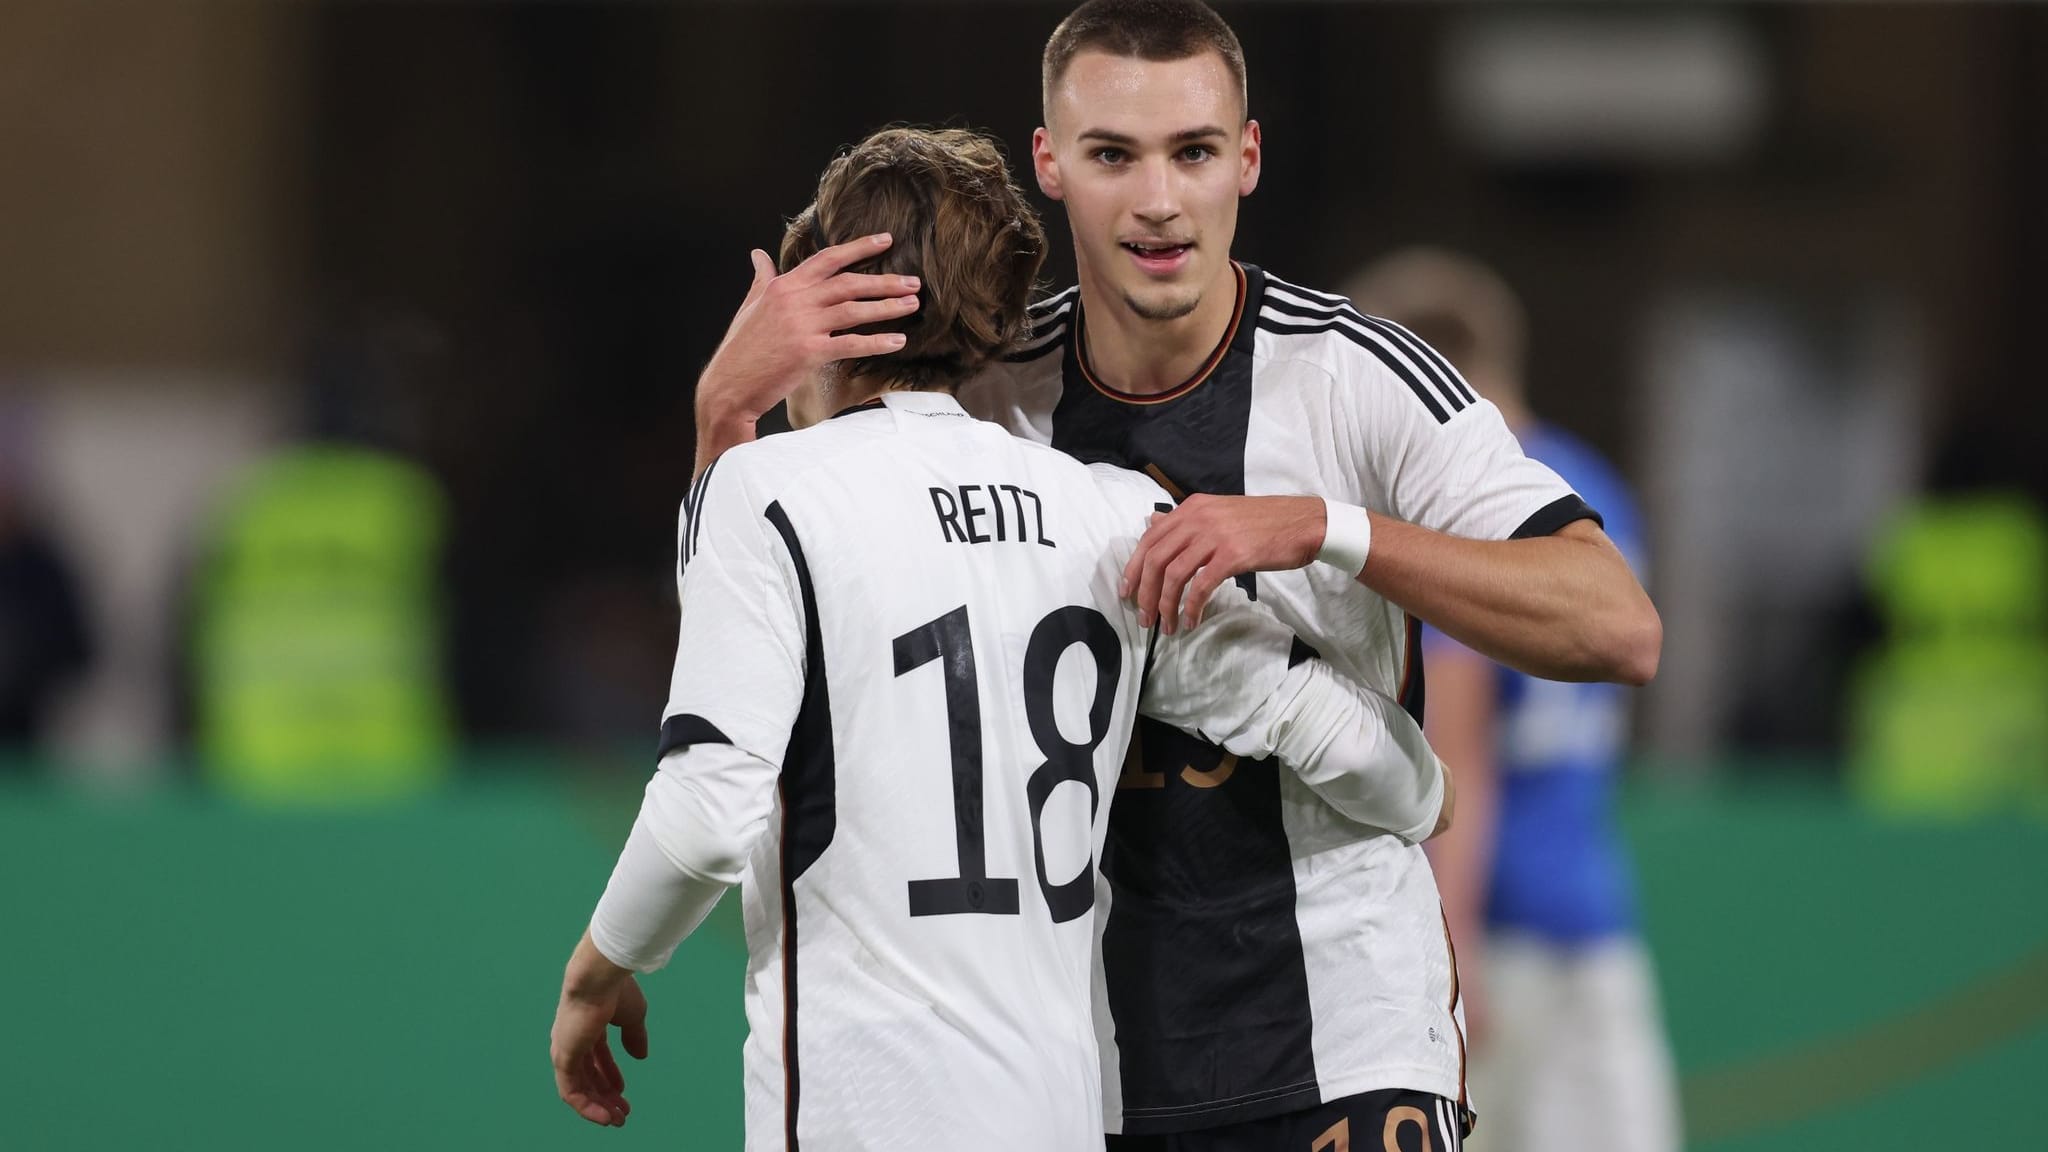 U21-Nationalmannschaft | Reitz feiert starkes Debüt für U21